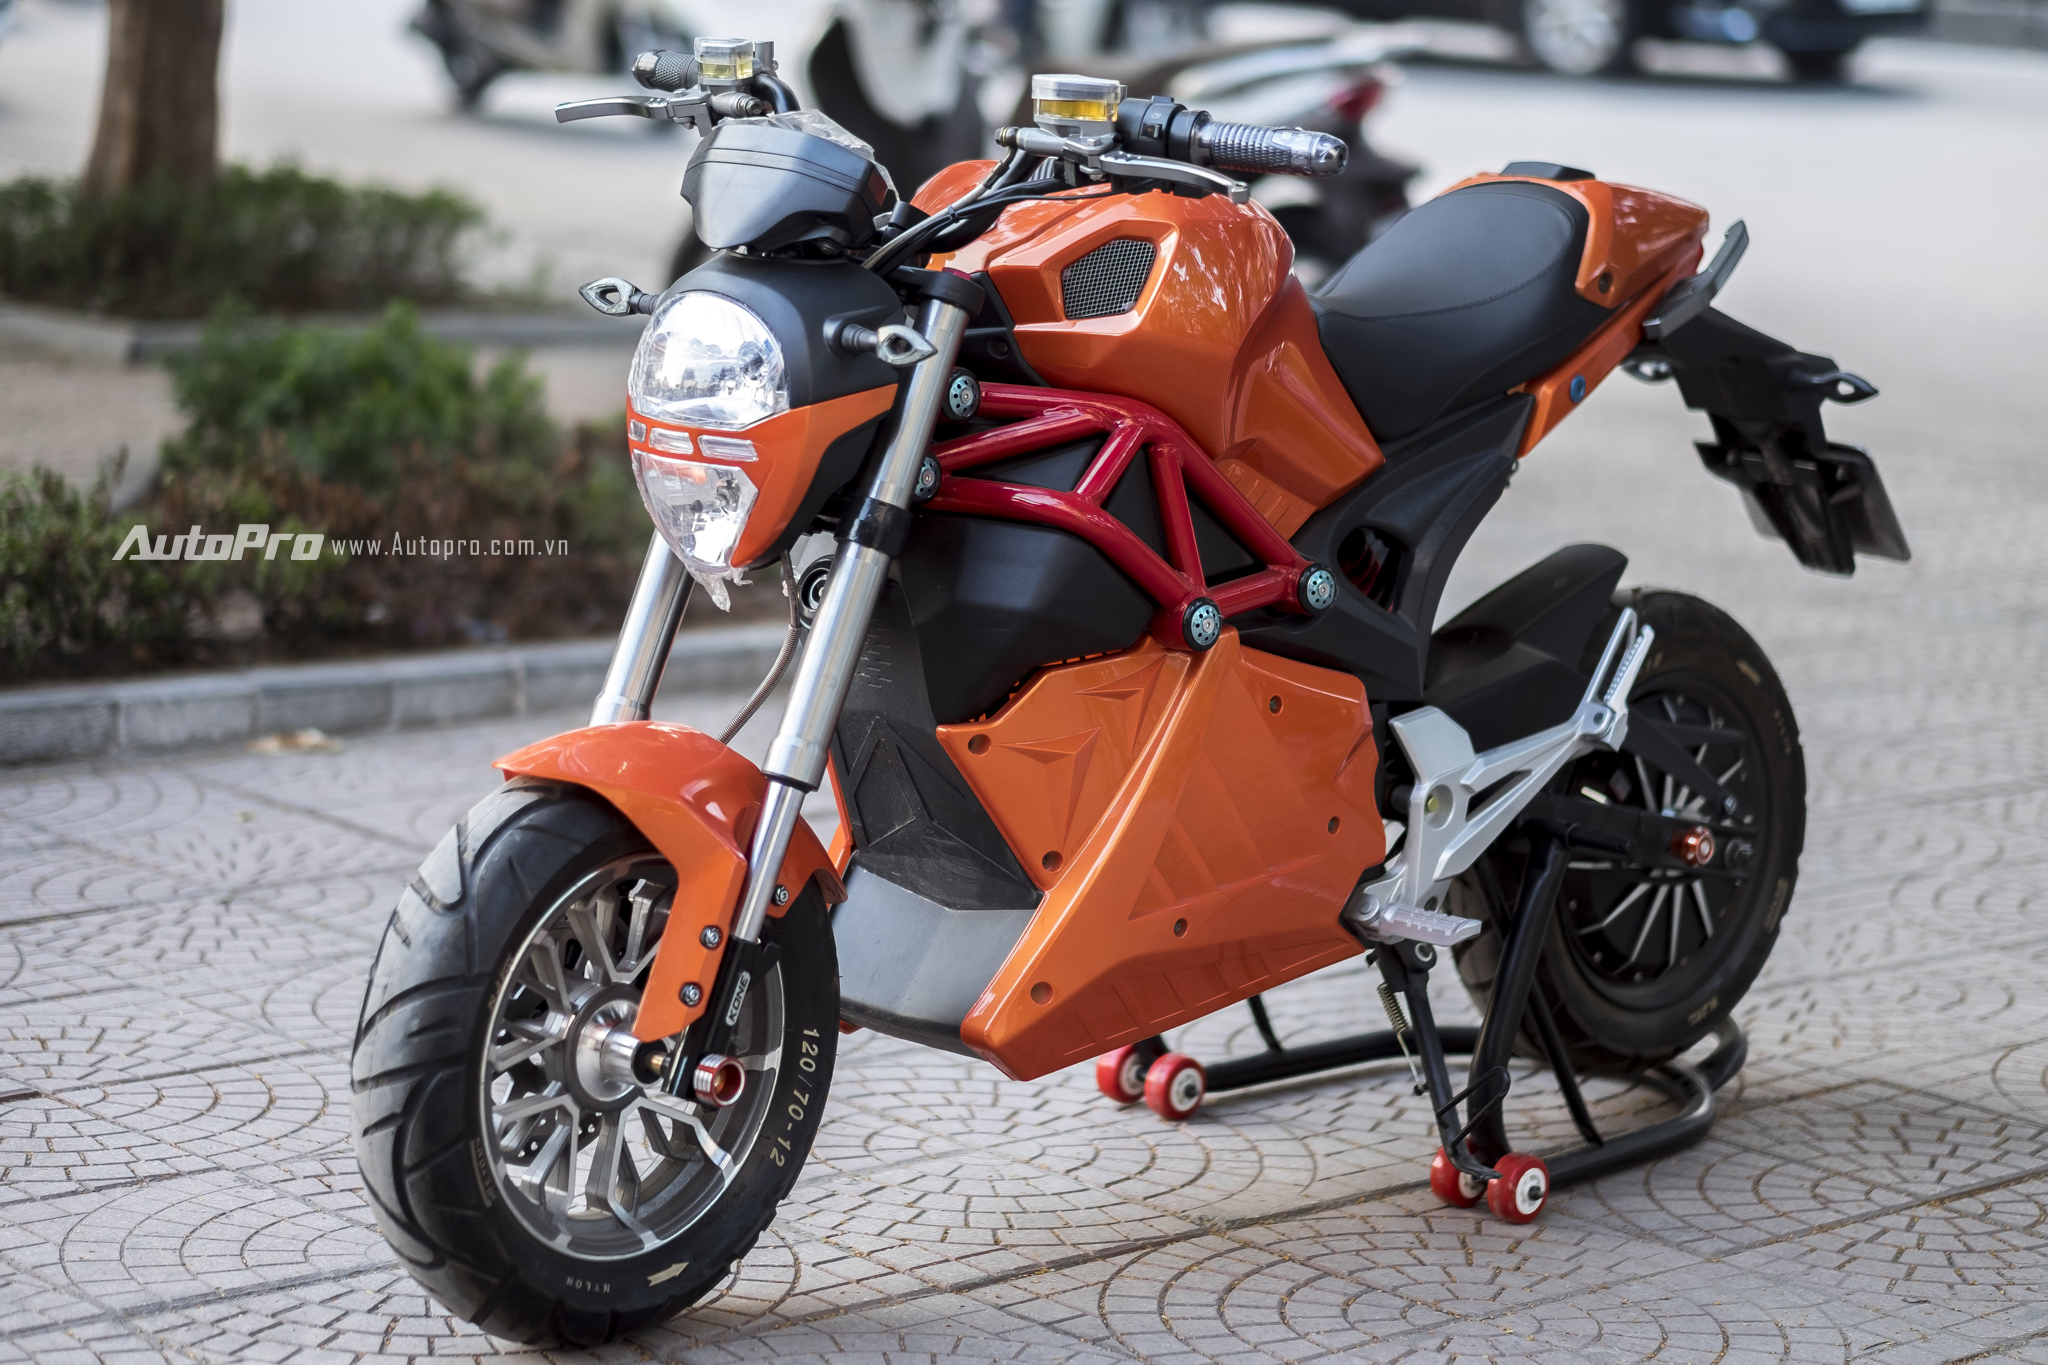 Sự thật về siêu xe Ducati Monster 110 giá 30 triệu đồng ở Việt Nam